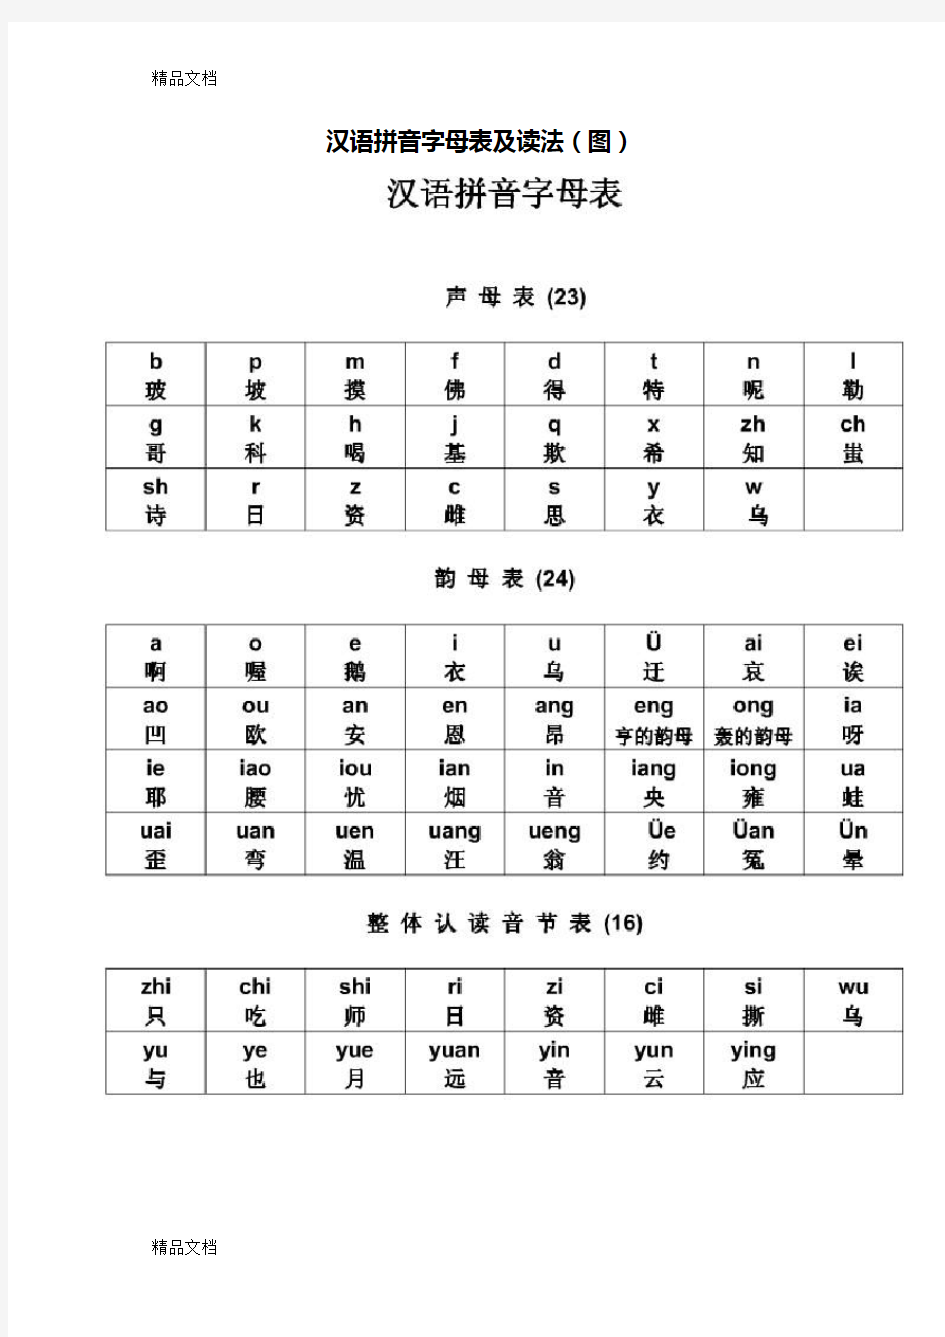 汉语拼音字母表及读法(图)47324知识讲解